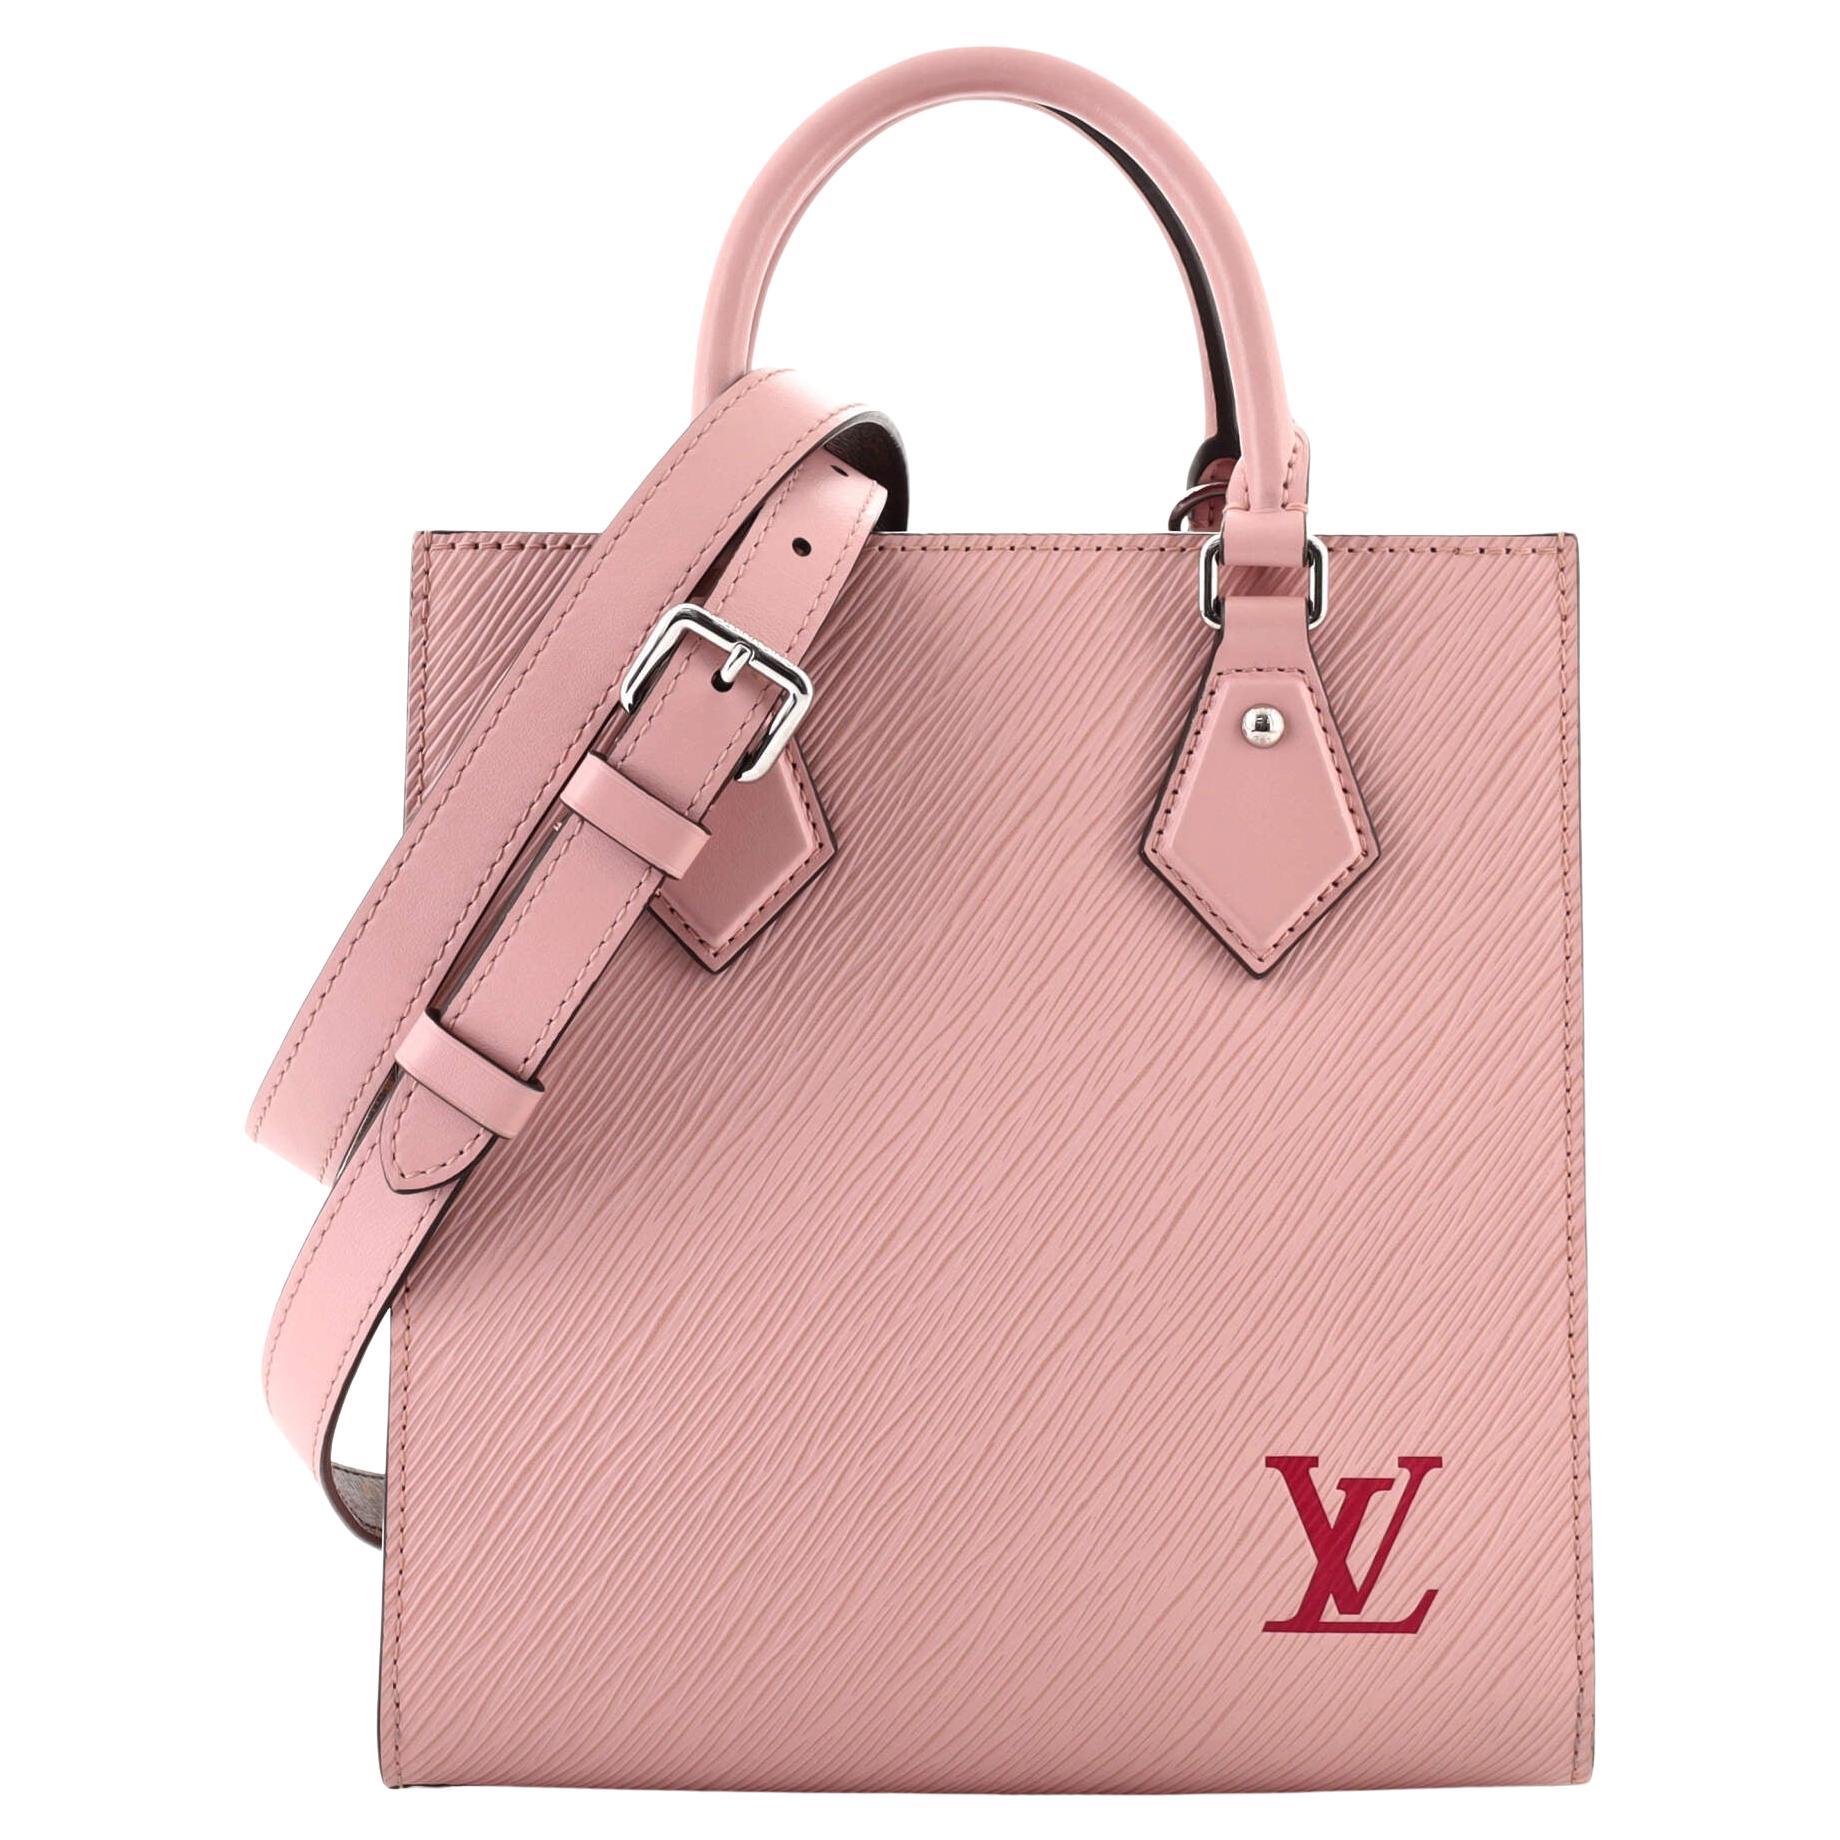 Louis Vuitton Epi Sac Plat PM w/ Strap - Black Totes, Handbags